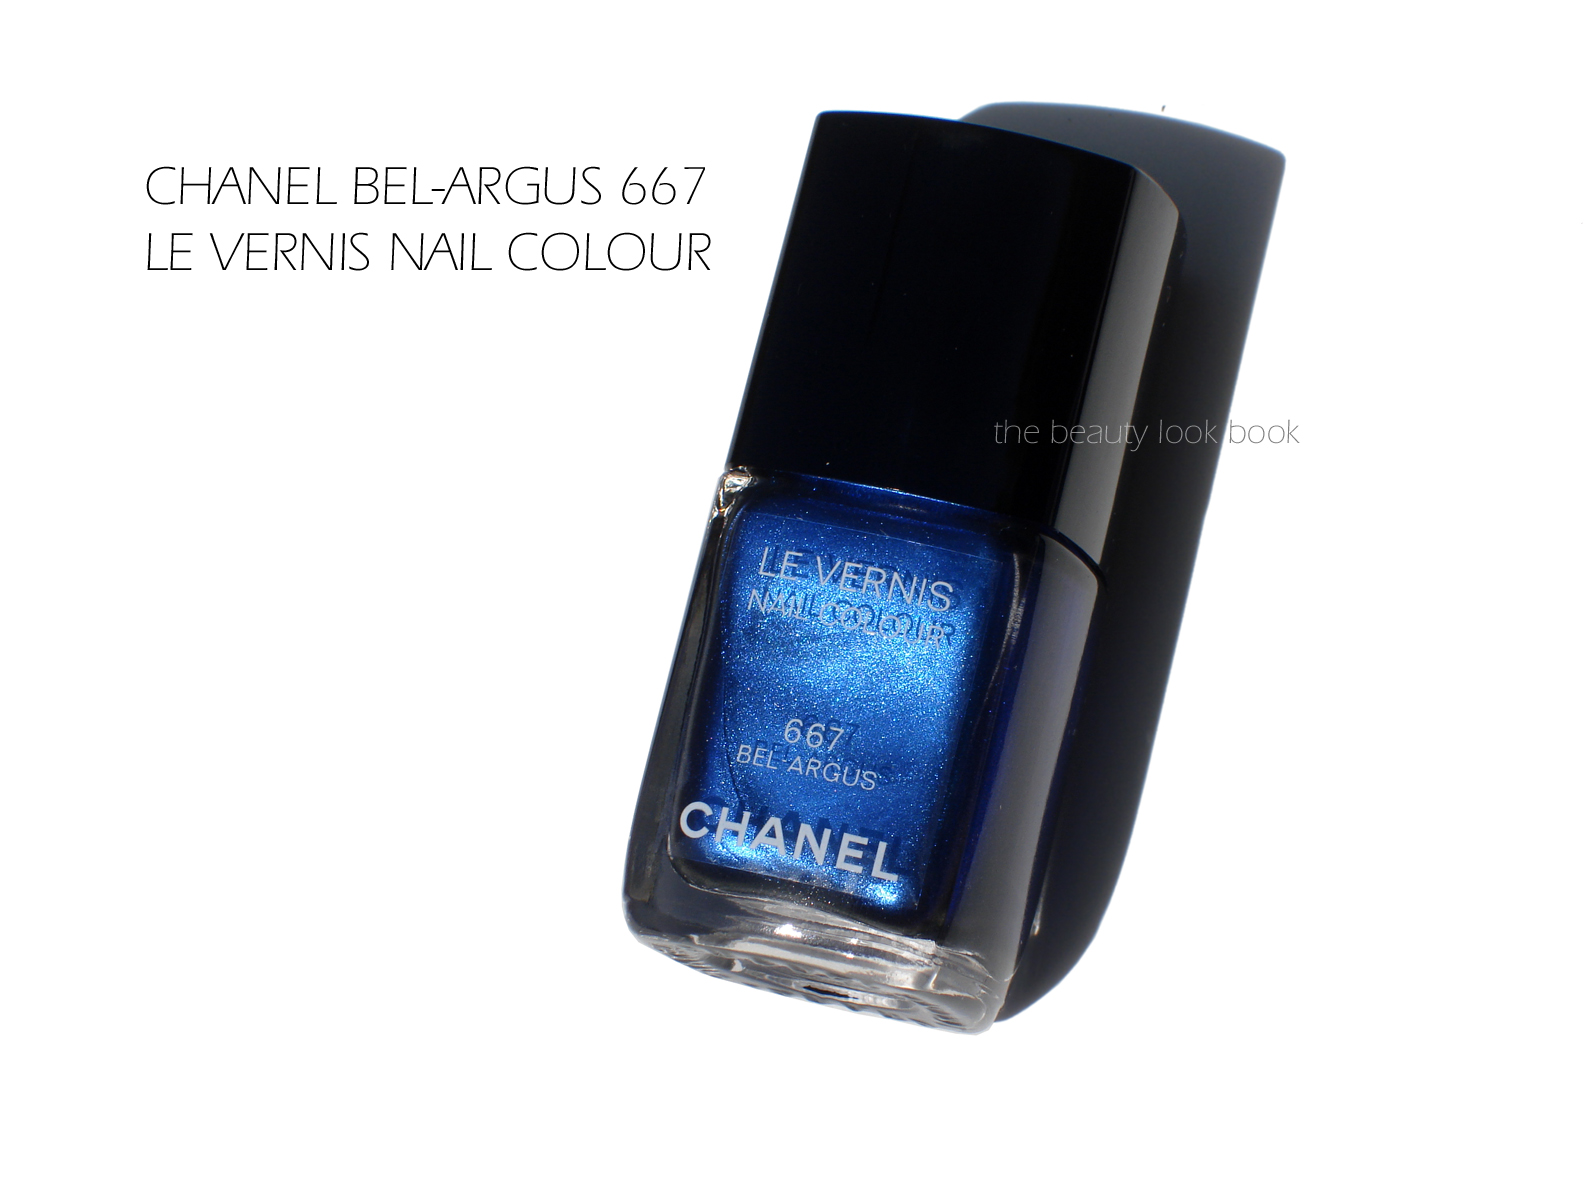 Chanel Le Vernis Summer 2013: Lilis #647, Azuré #657 and Bel-Argus